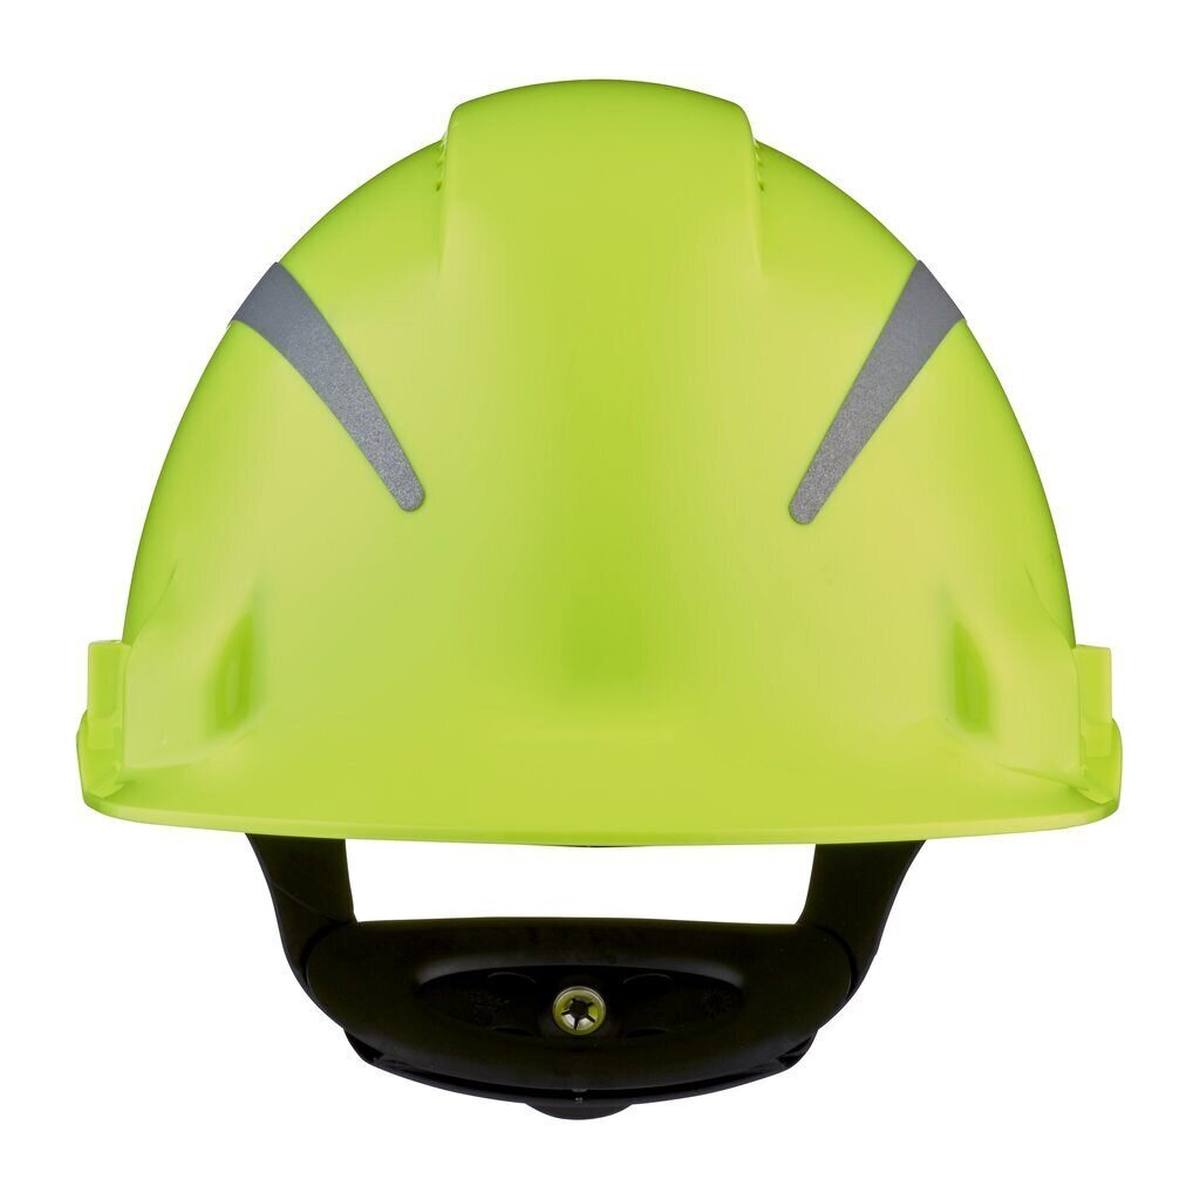 3M G3000 veiligheidshelm met UV-indicator, neongroen, ABS, geventileerde ratelsluiting, kunststof zweetband, reflecterende sticker